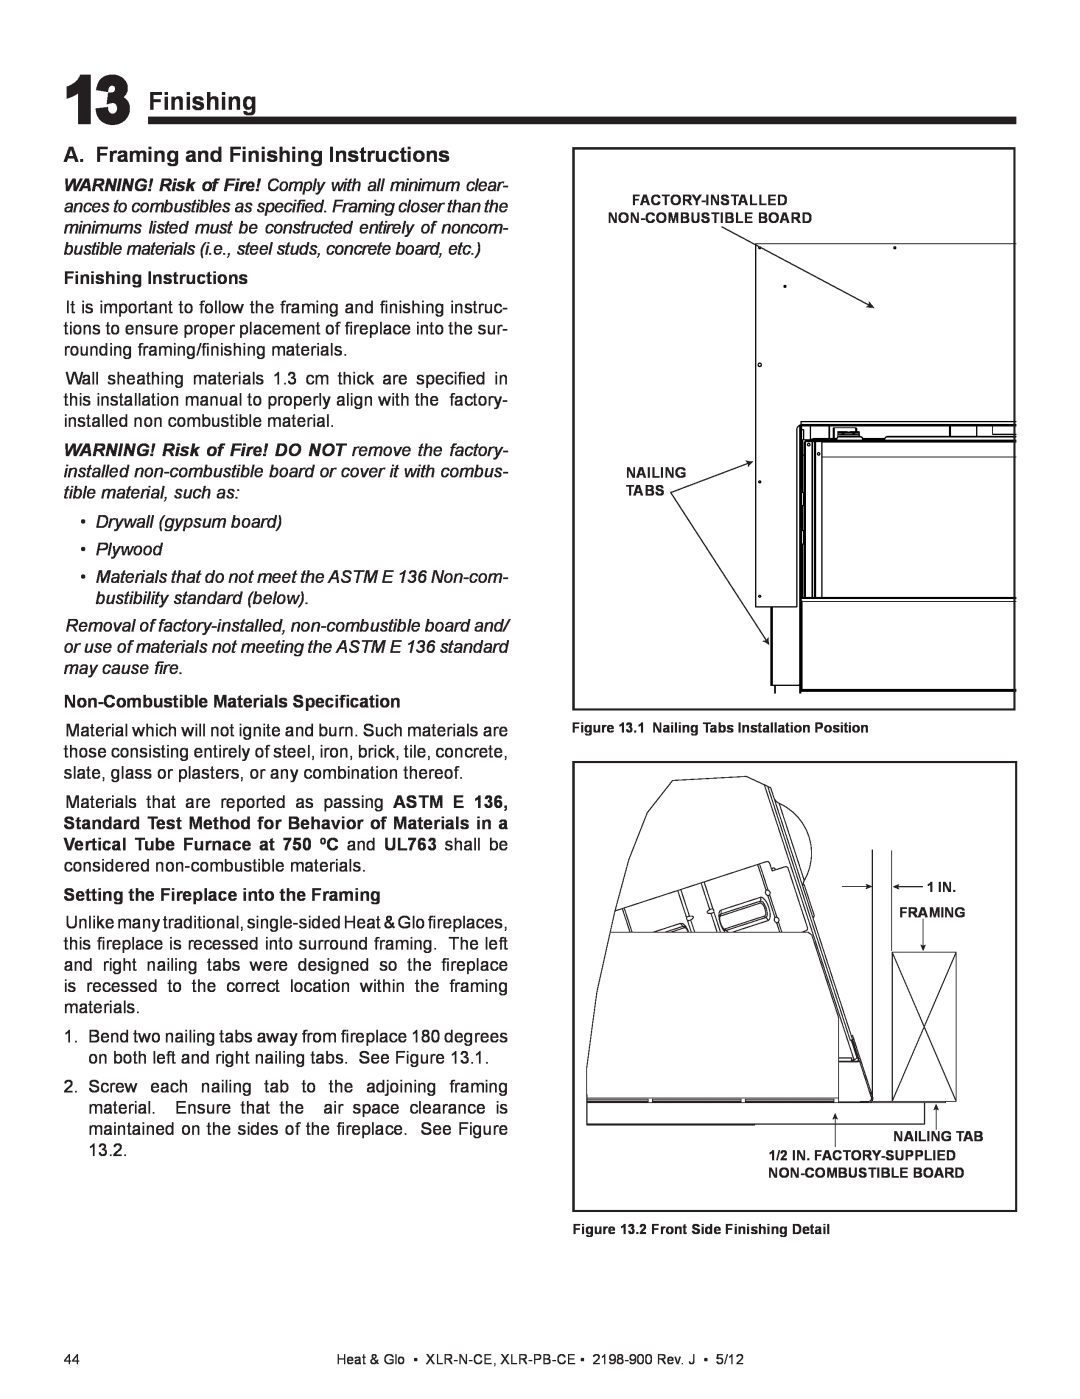 Heat & Glo LifeStyle XLR-N-CE, XLR-PB-CE manual A. Framing and Finishing Instructions, •Drywall gypsum board •Plywood 